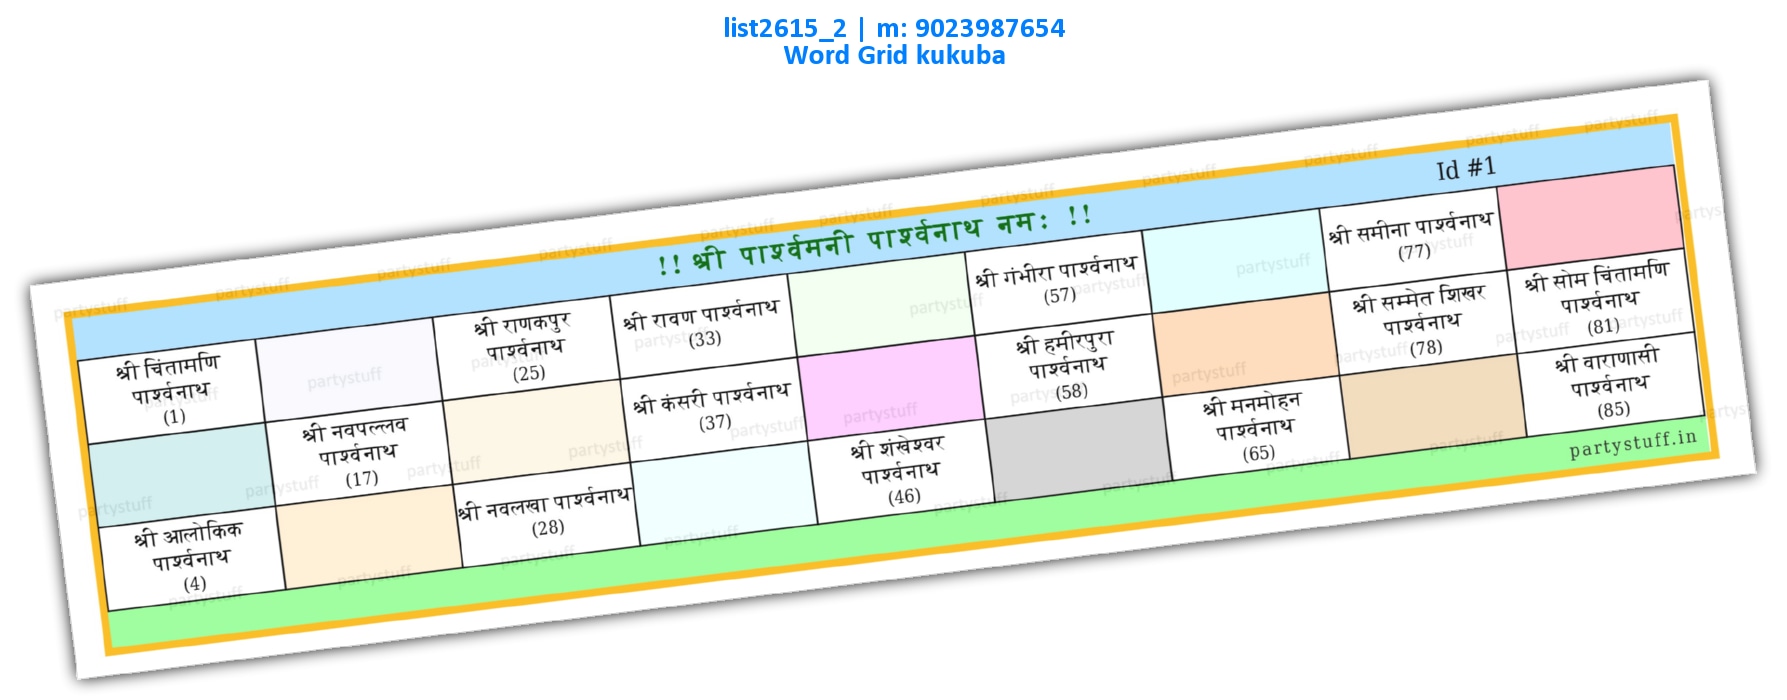 Parshavnath Jain Names Hindi | PDF list2615_2 PDF Tambola Housie